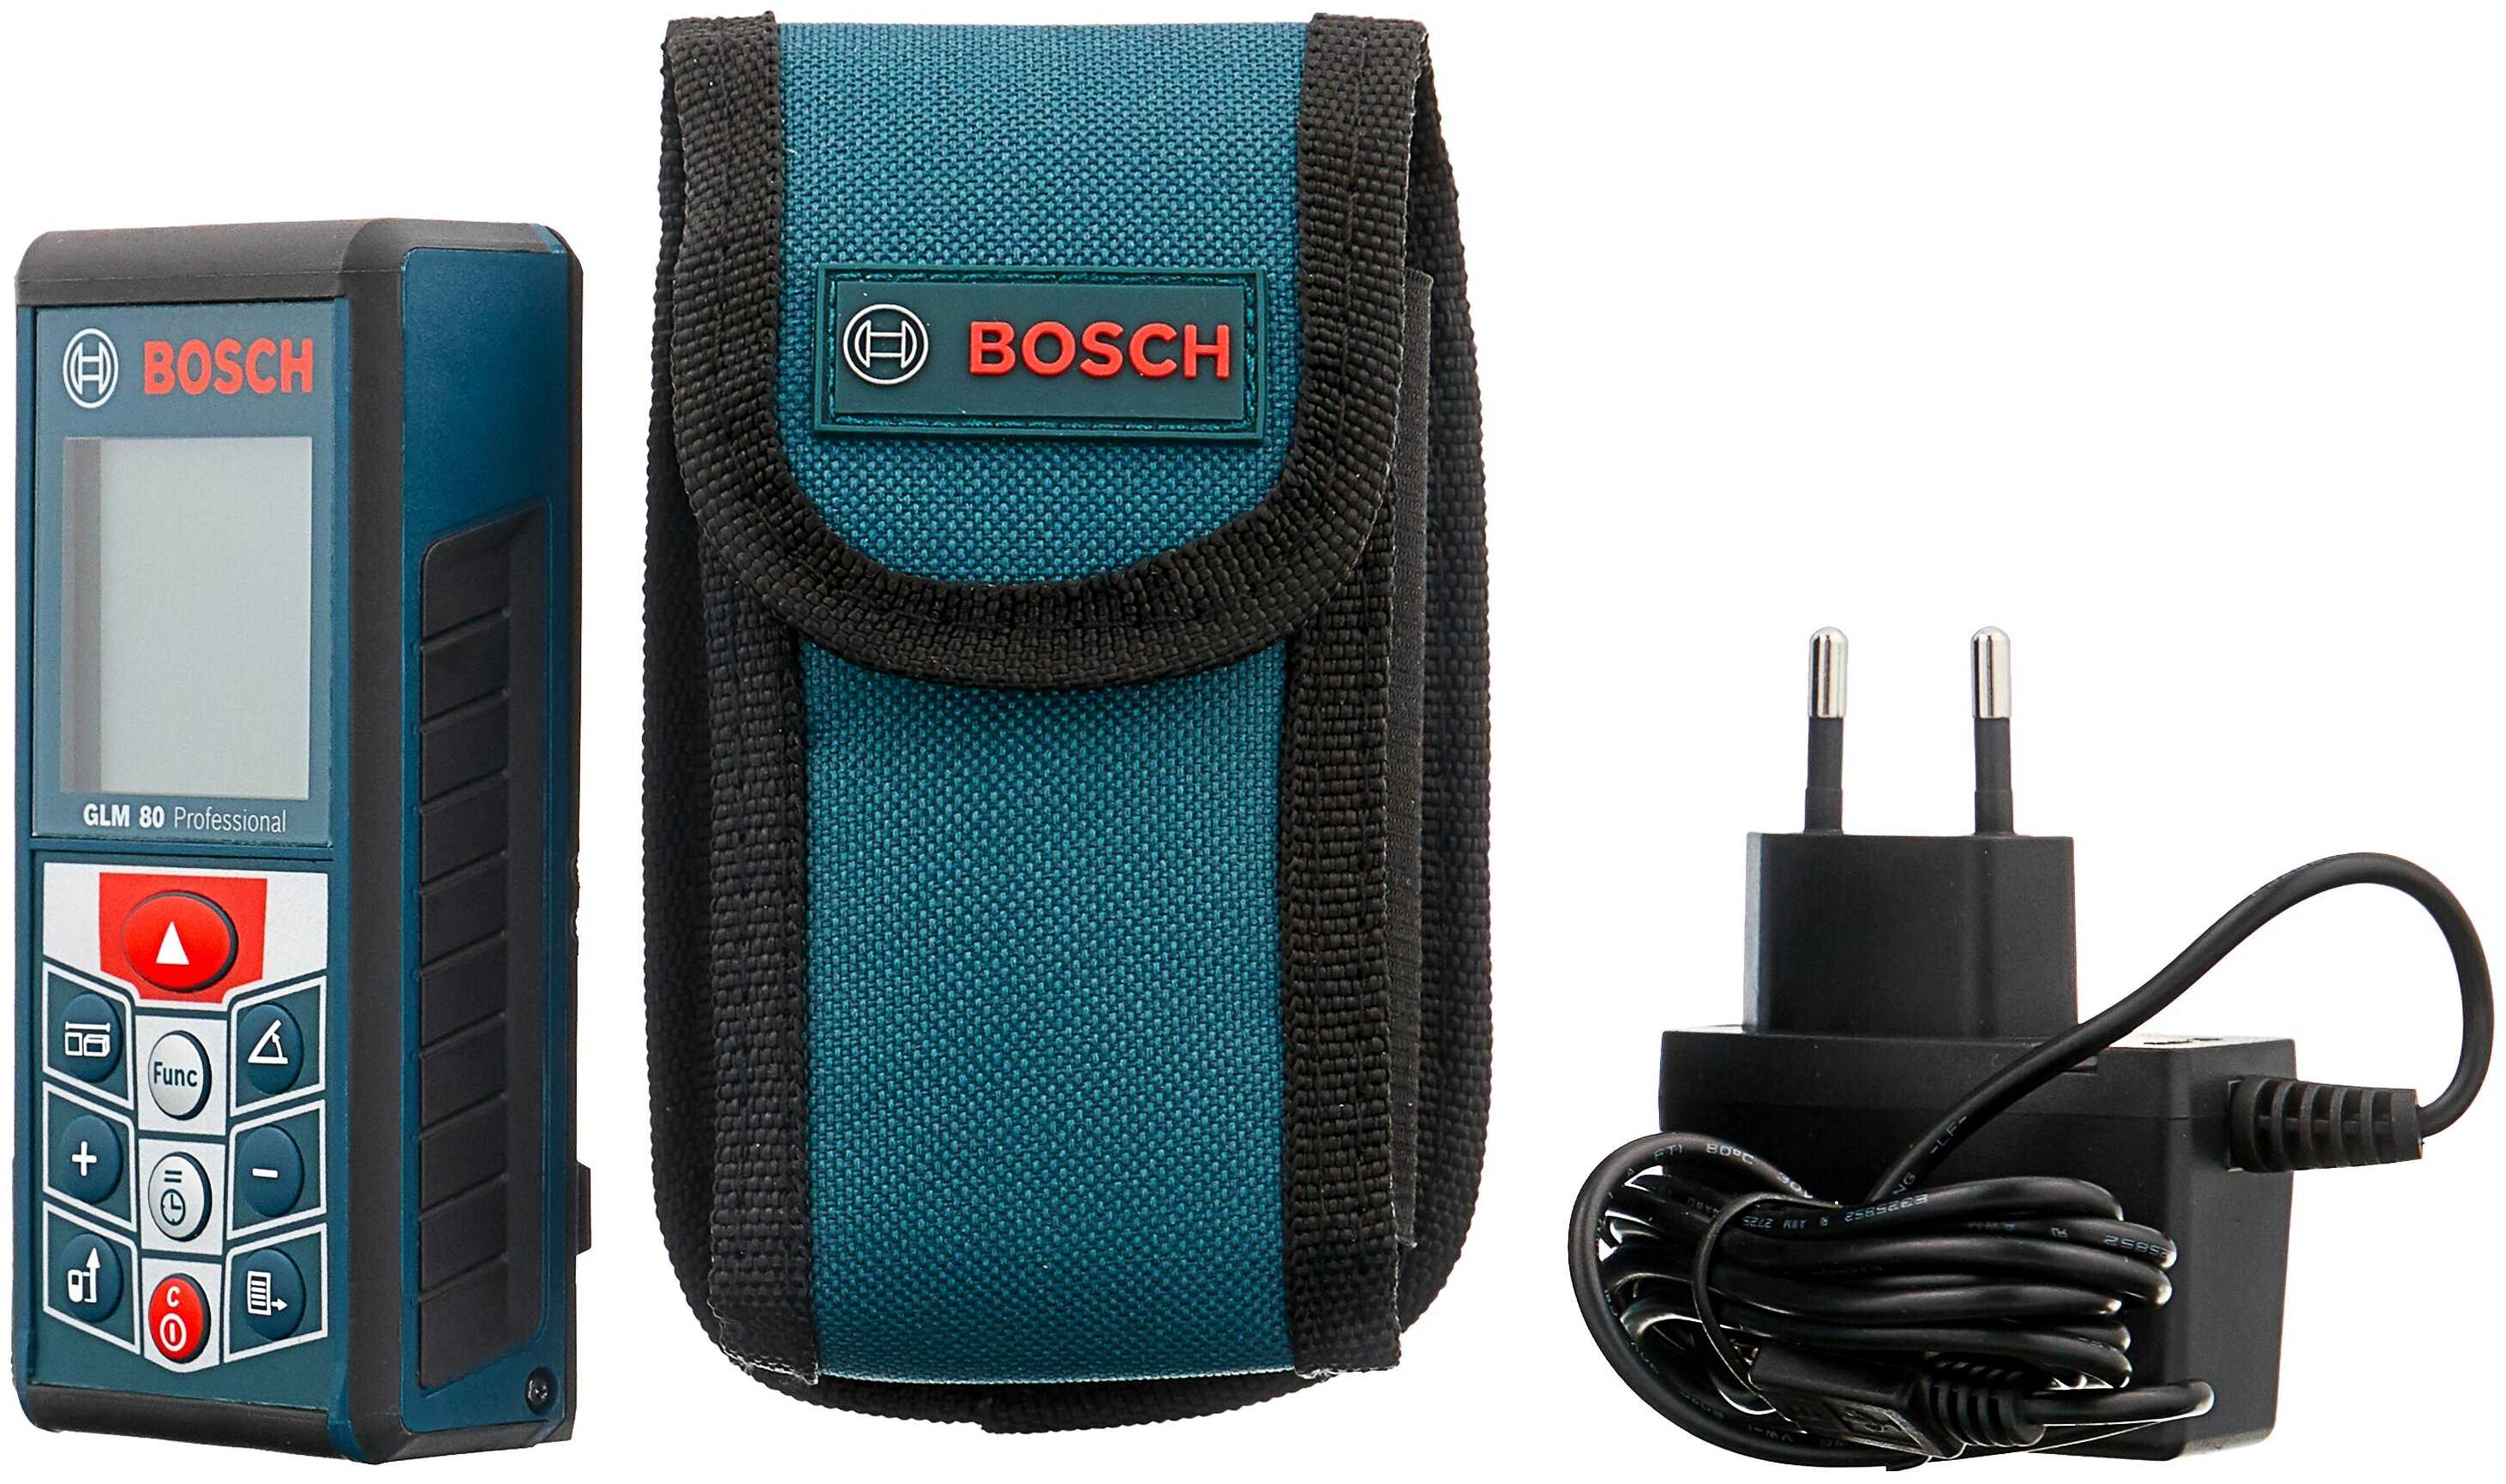 Bosch GLM 80 Professional - короткий, но максимально информативный обзор. Для большего удобства, добавлены характеристики, отзывы и видео.